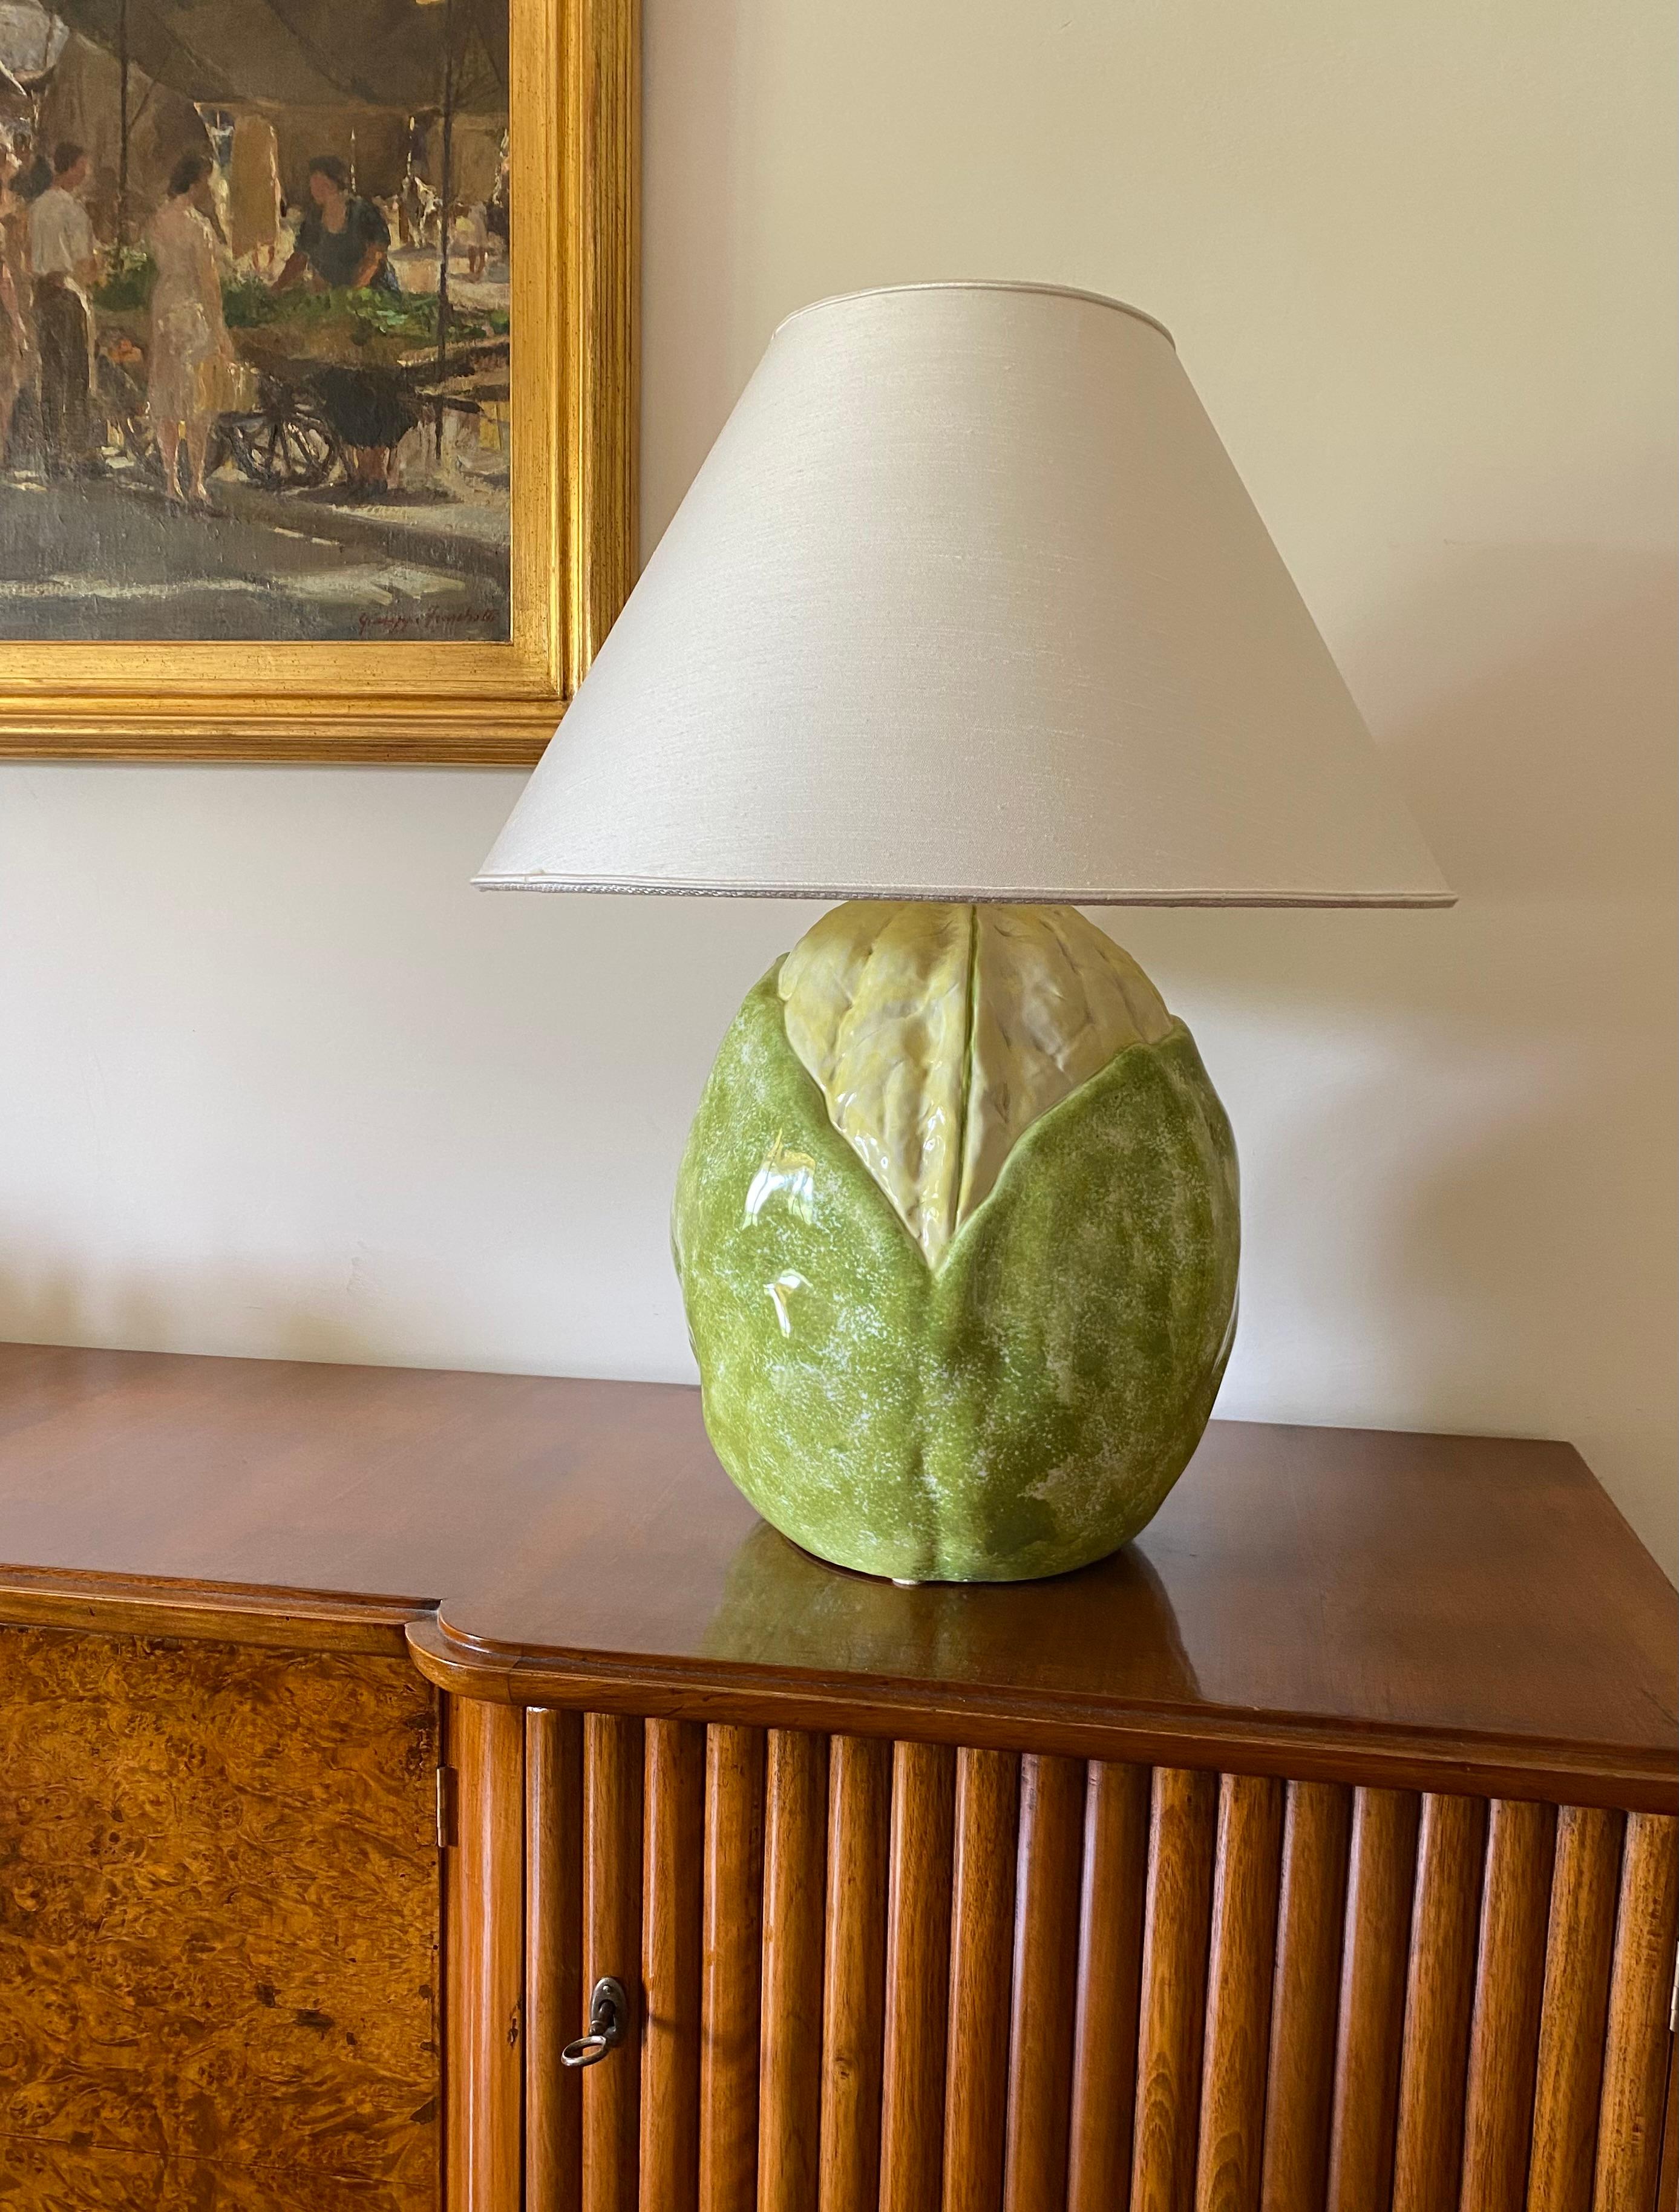 Lampe monumentale en céramique en forme de chou-fleur

Italie, années 1970

Base en céramique en forme de légume, fabriquée et peinte à la main.

Abat-jour non inclus.

H 45 cm - diam. 33 cm

État : excellent, conforme à l'âge et à l'utilisation